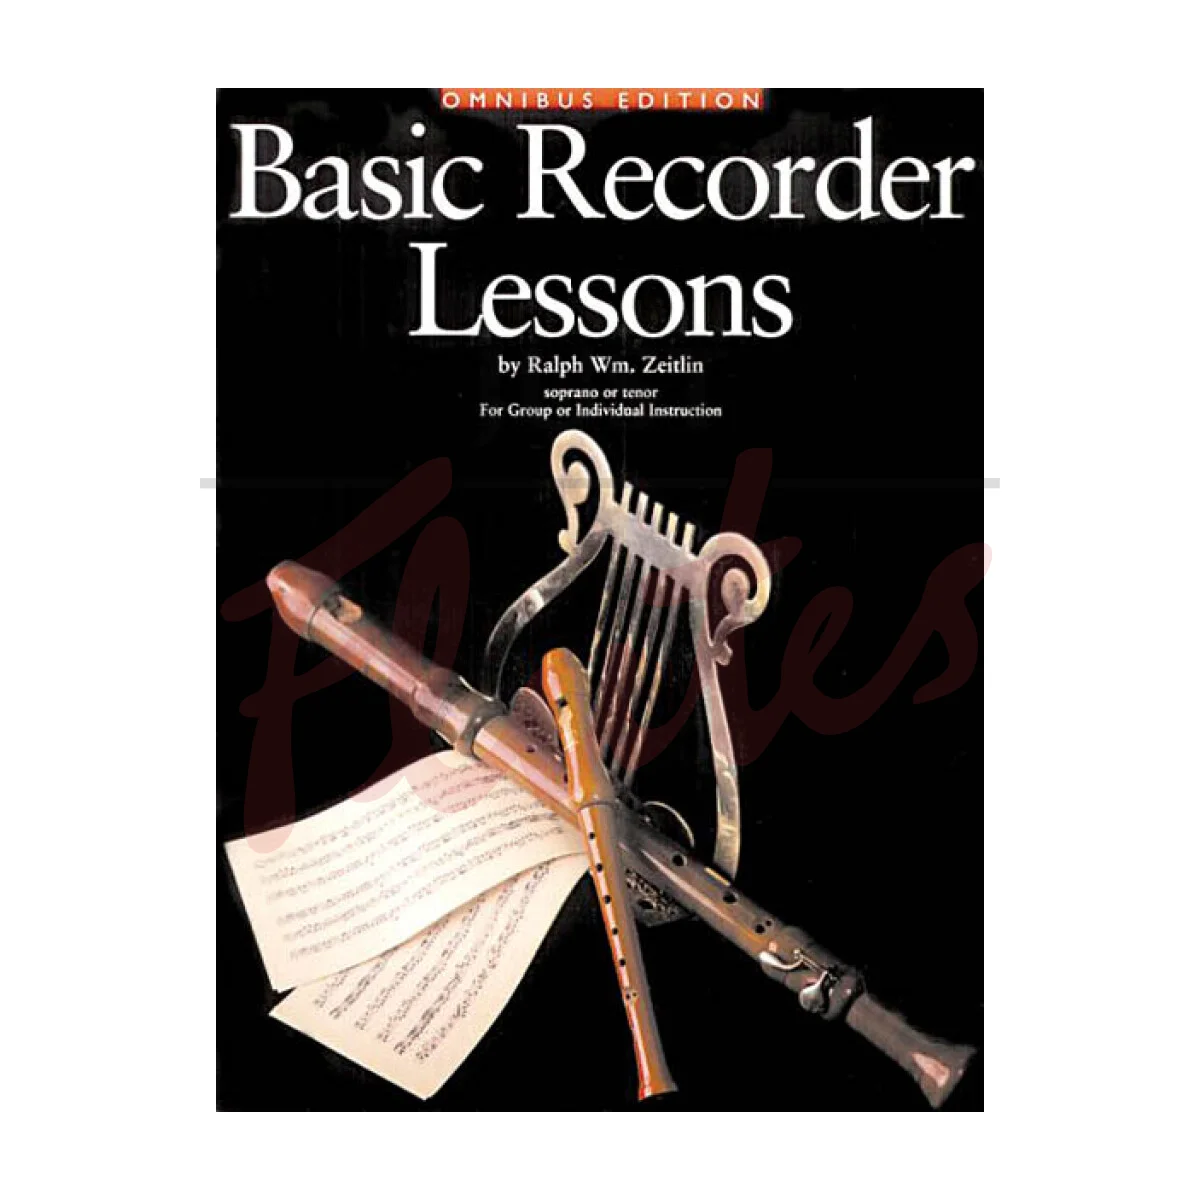 Basic Recorder Lessons - Omnibus